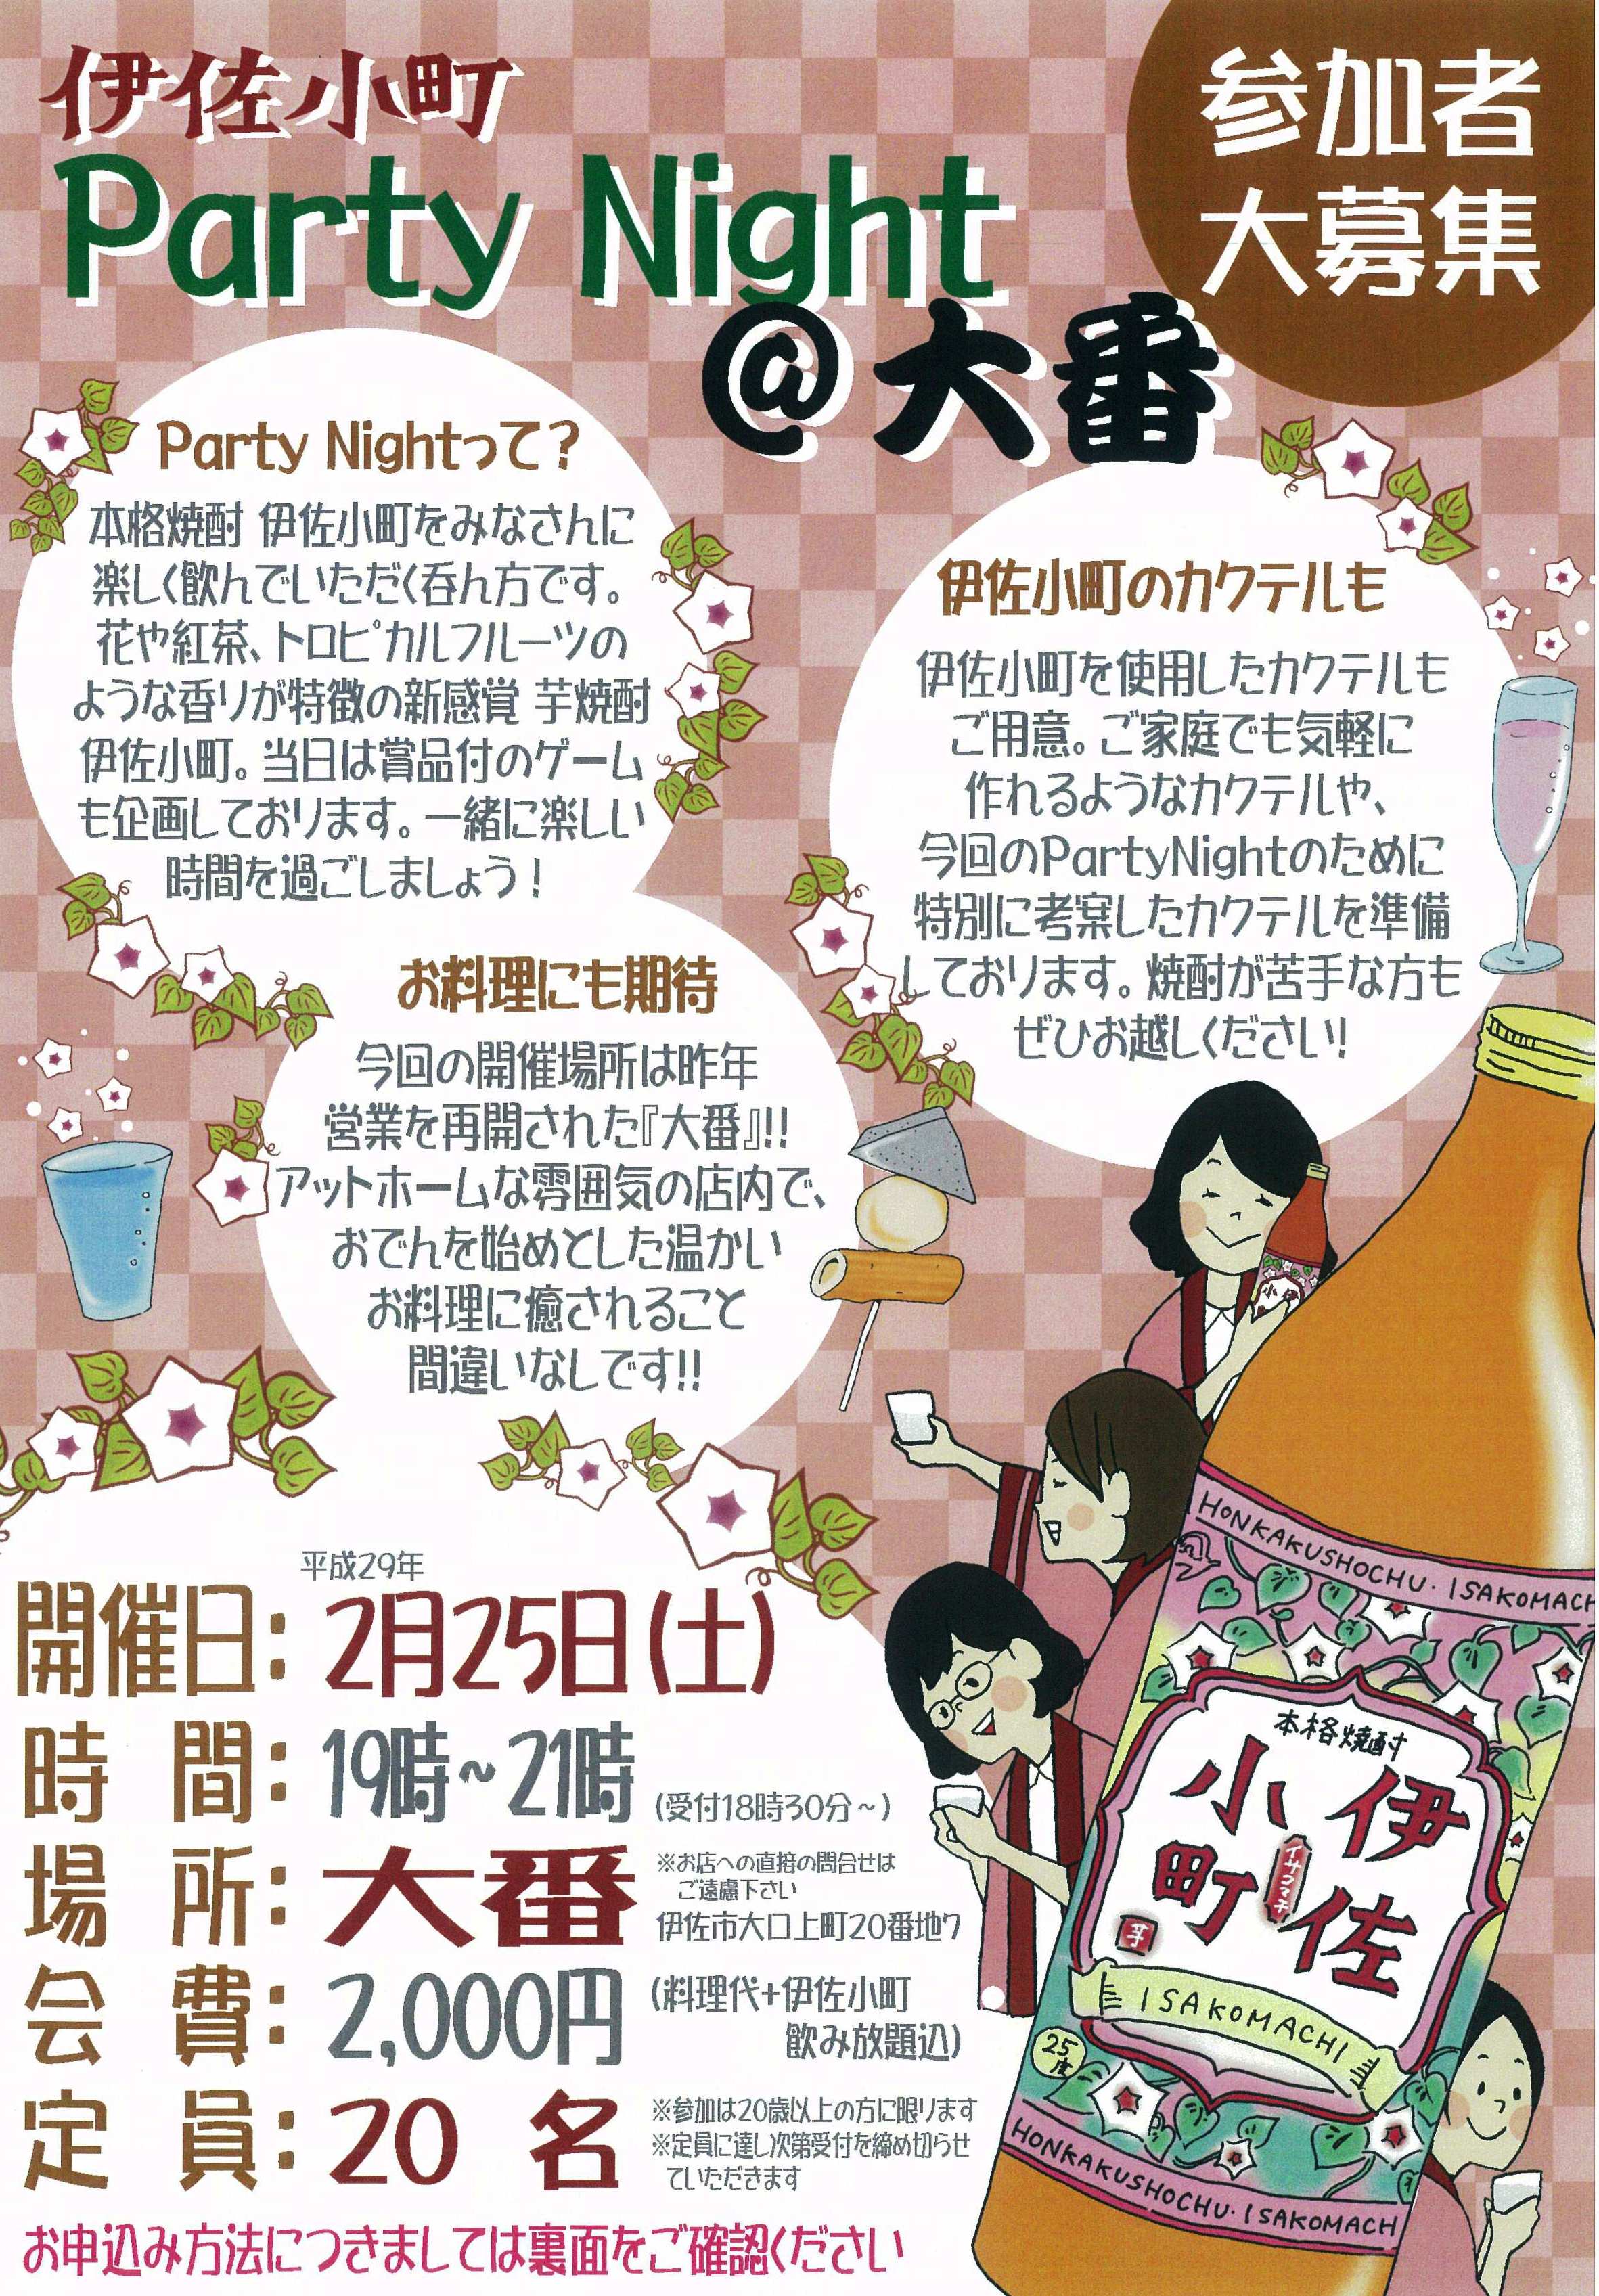 伊佐小町Party Night @ 大番』開催のお知らせ | 伊佐小町 // 新感覚の